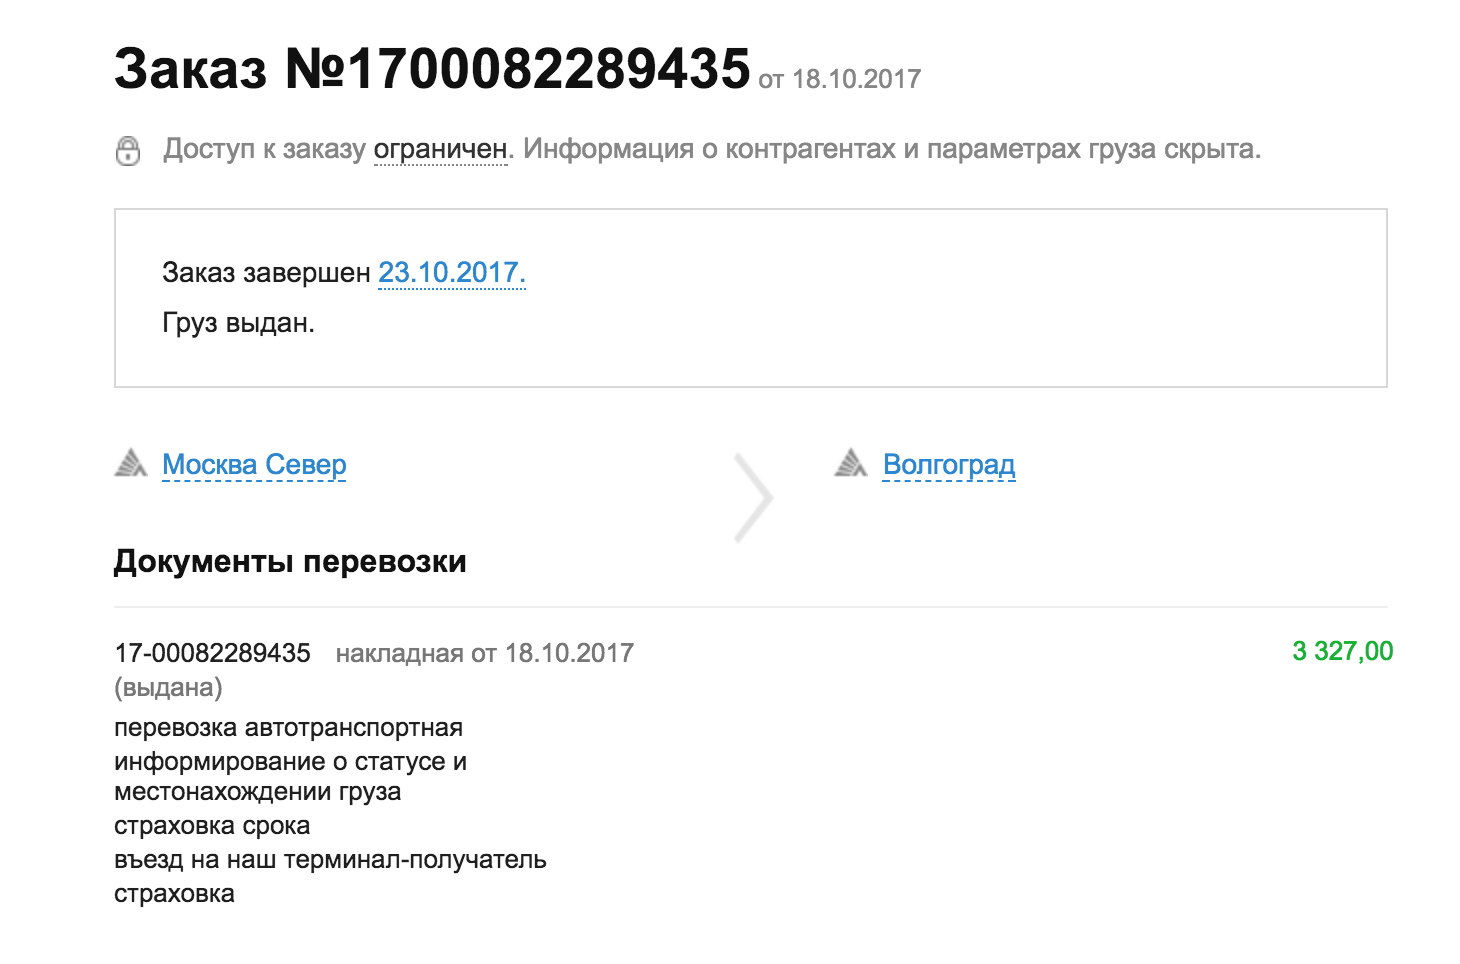 Отследить груз деловые линии по трек. Номер накладной Деловые линии. Dellin.ru Tracker отслеживание. Деловые линии отслеживание груза по номеру накладной. Номер заказа в деловых линиях.